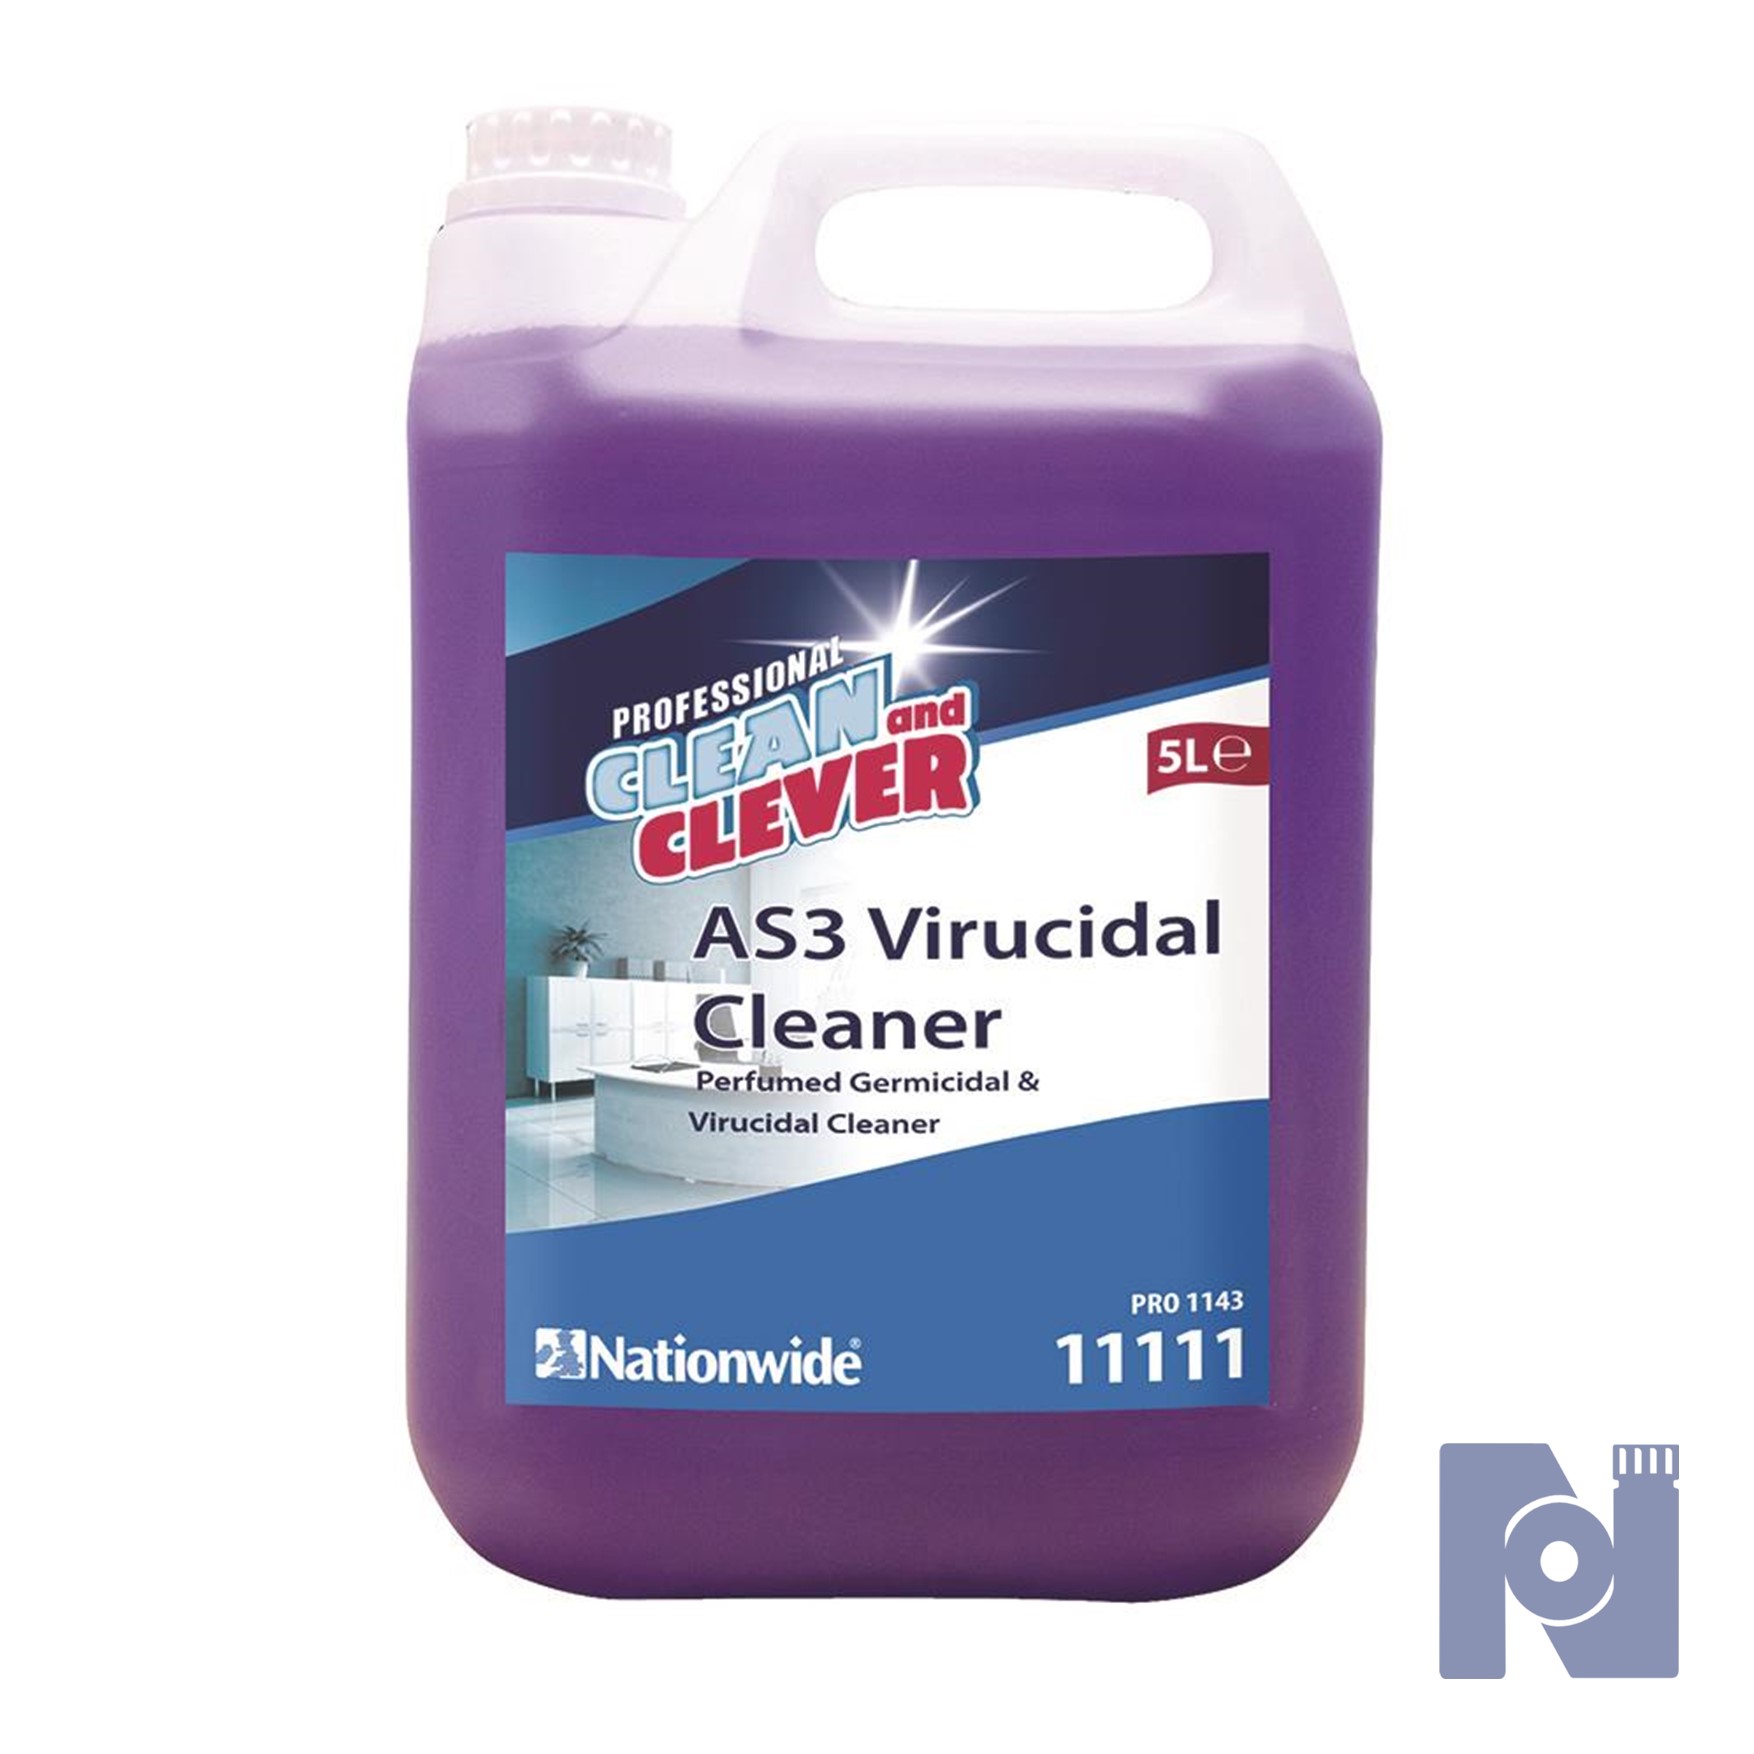 Clean & Clever AS3 Virucidal Cleaner